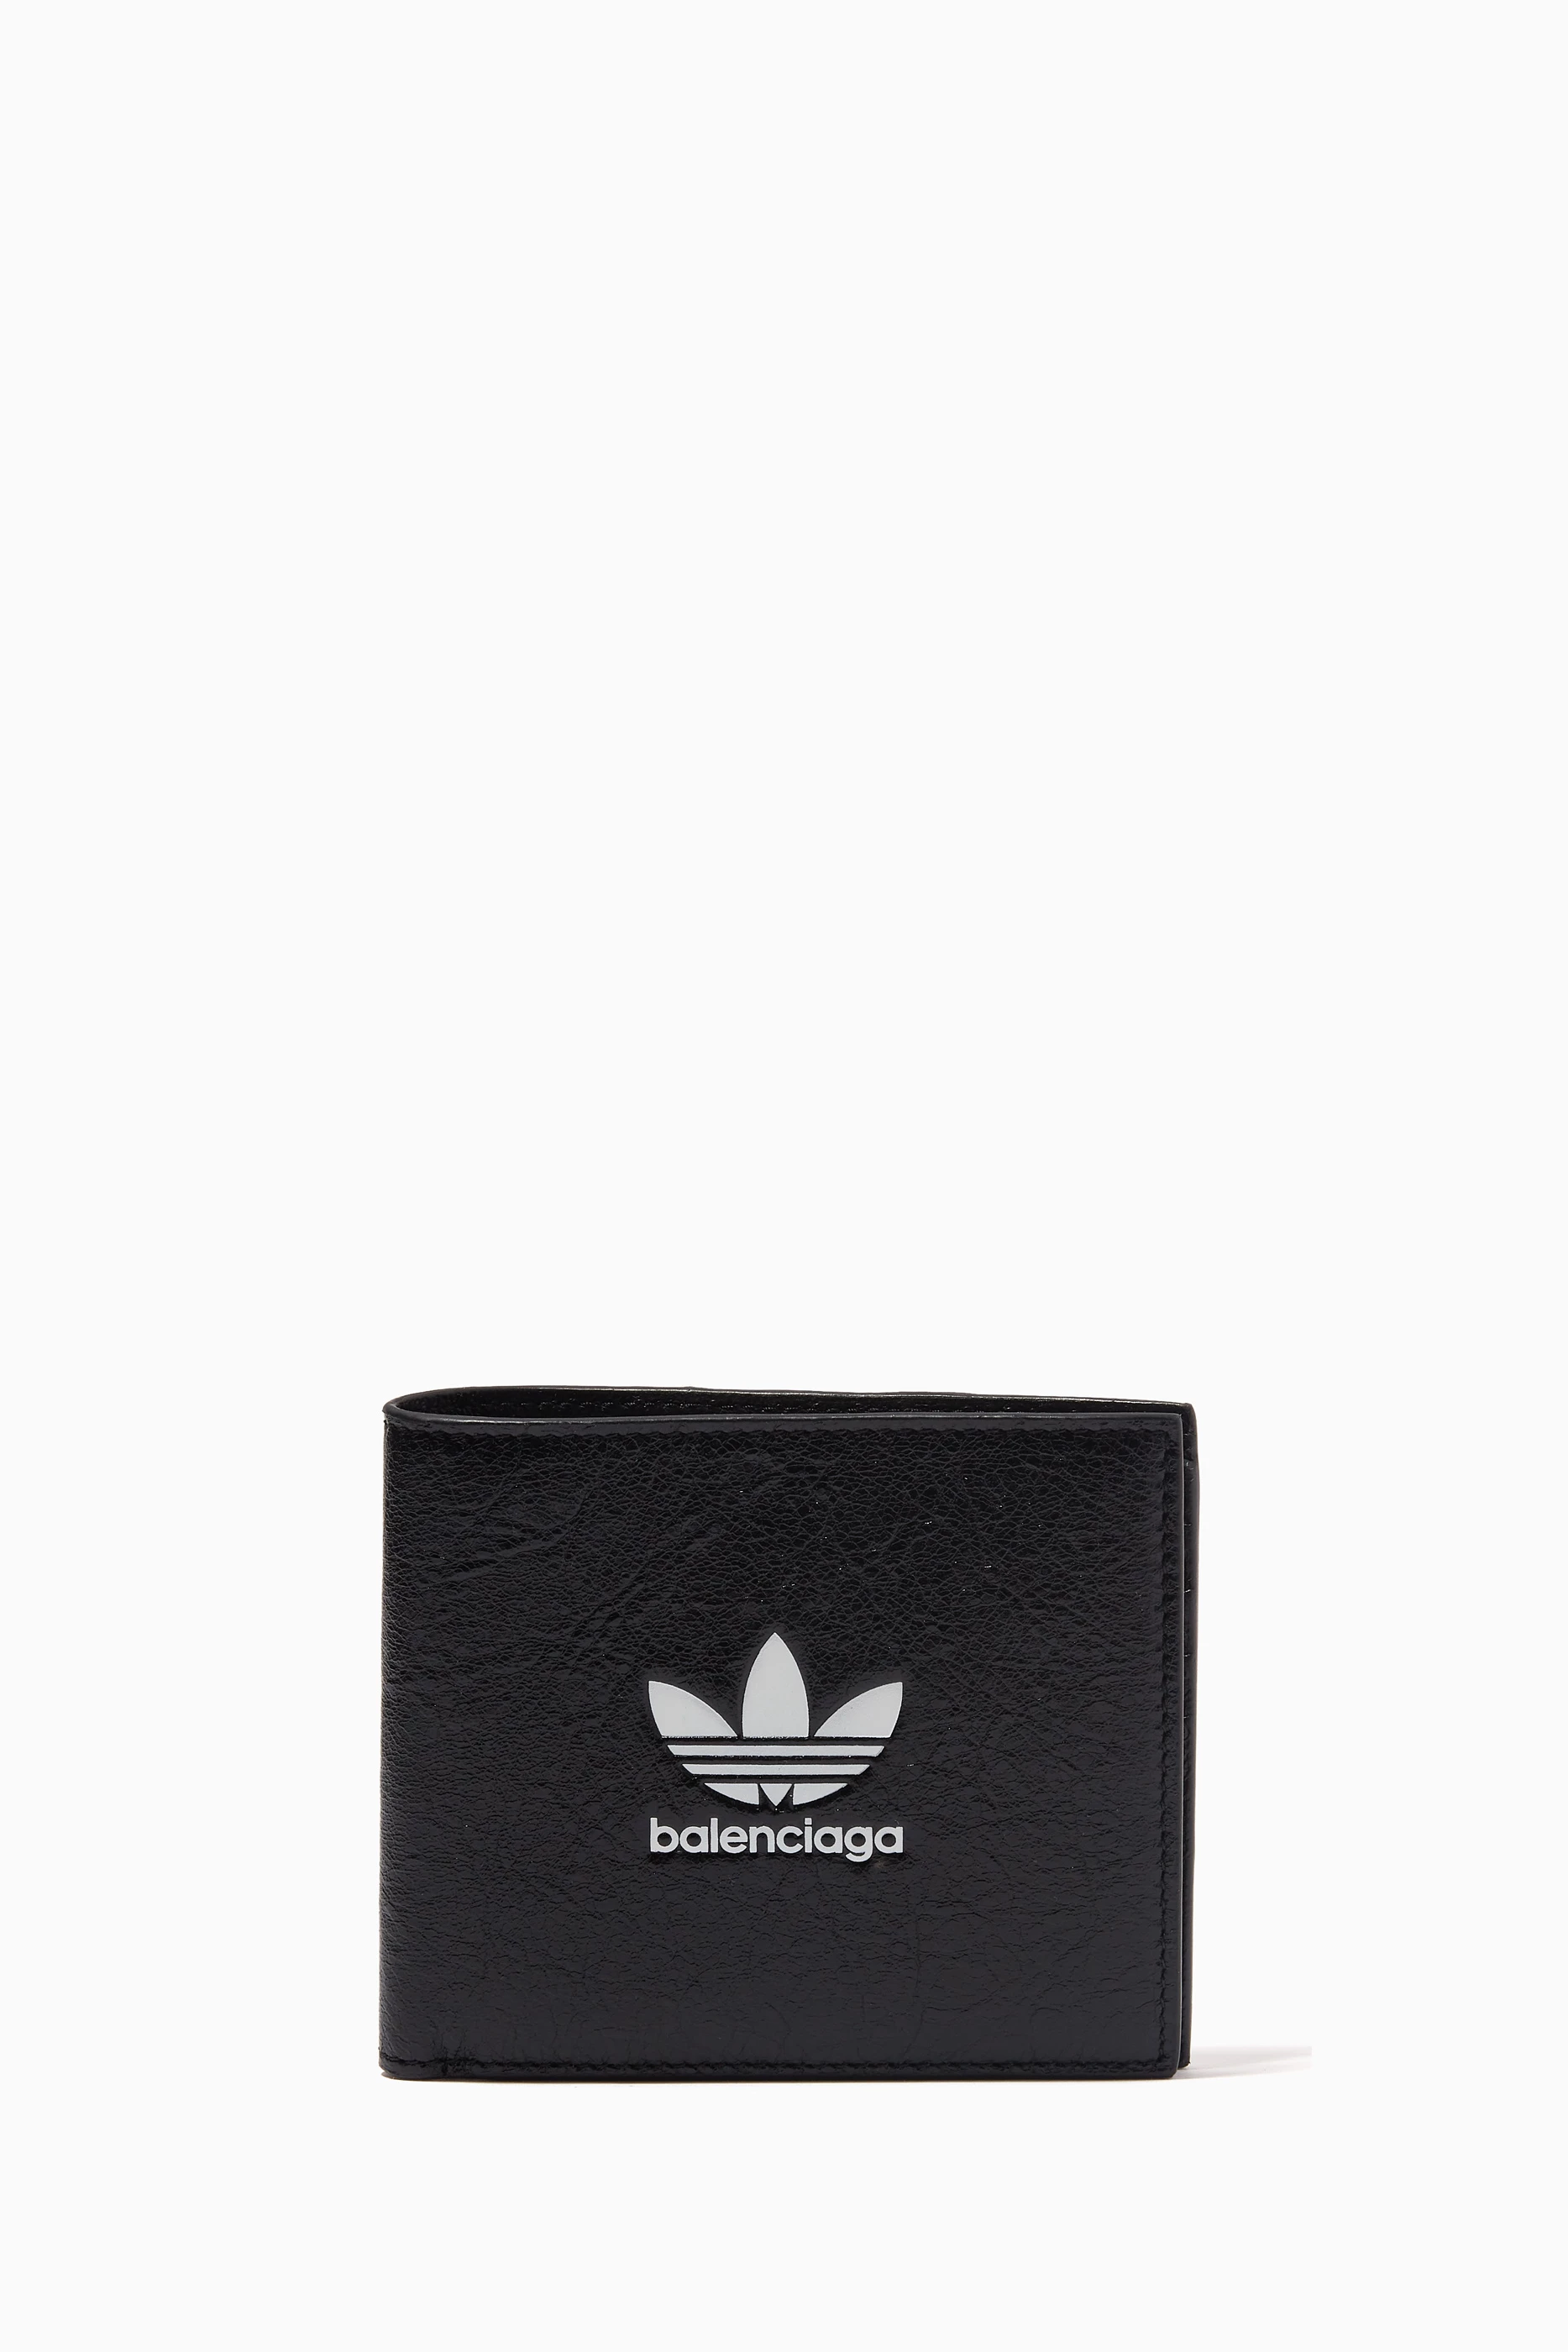 Mierda Falsificación Megalópolis Shop Balenciaga Black x Adidas Logo Square Folded Wallet in Leather for MEN  | Ounass Kuwait